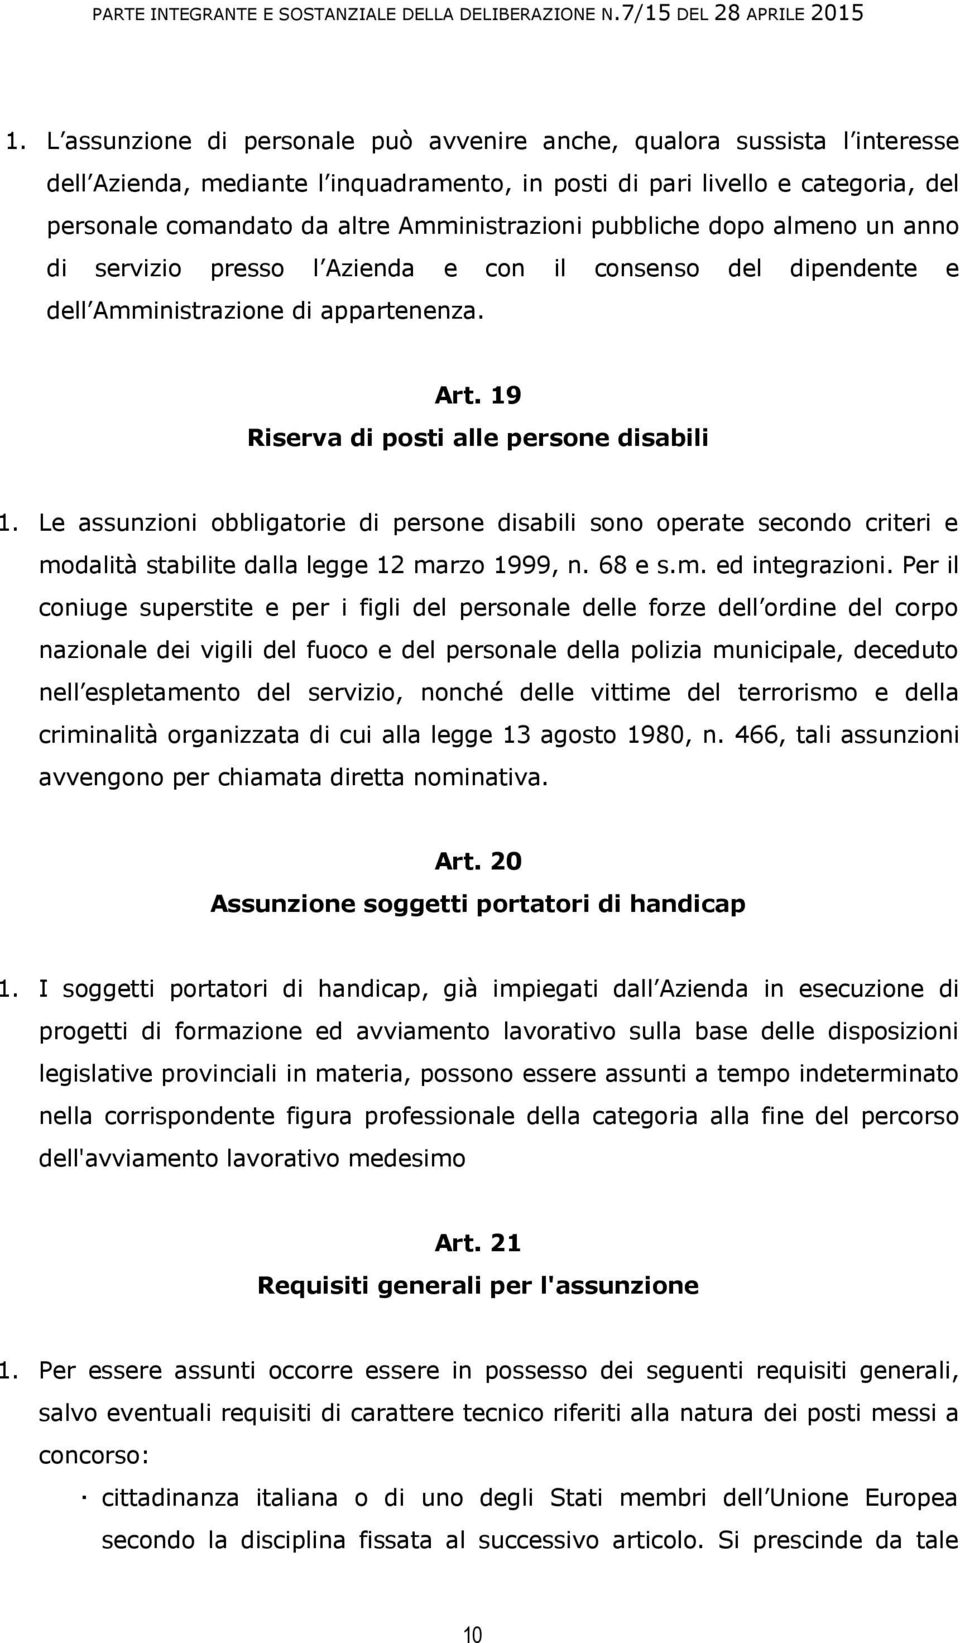 Le assunzioni obbligatorie di persone disabili sono operate secondo criteri e modalità stabilite dalla legge 12 marzo 1999, n. 68 e s.m. ed integrazioni.